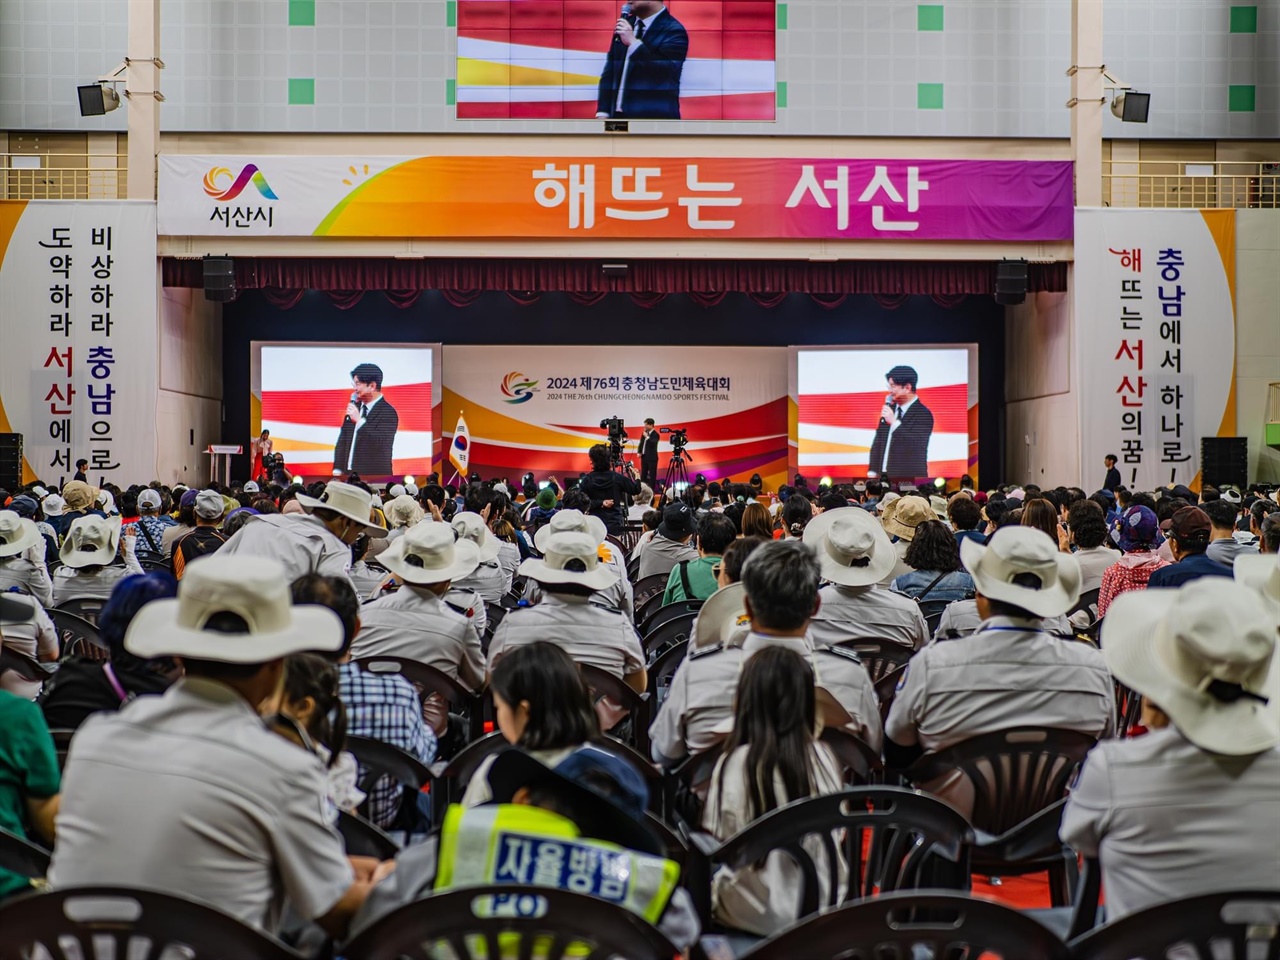 지난 13일 개막한 ‘76회 충남도민체전’이 4일간 열전을 벌이며 16일 폐막했다.